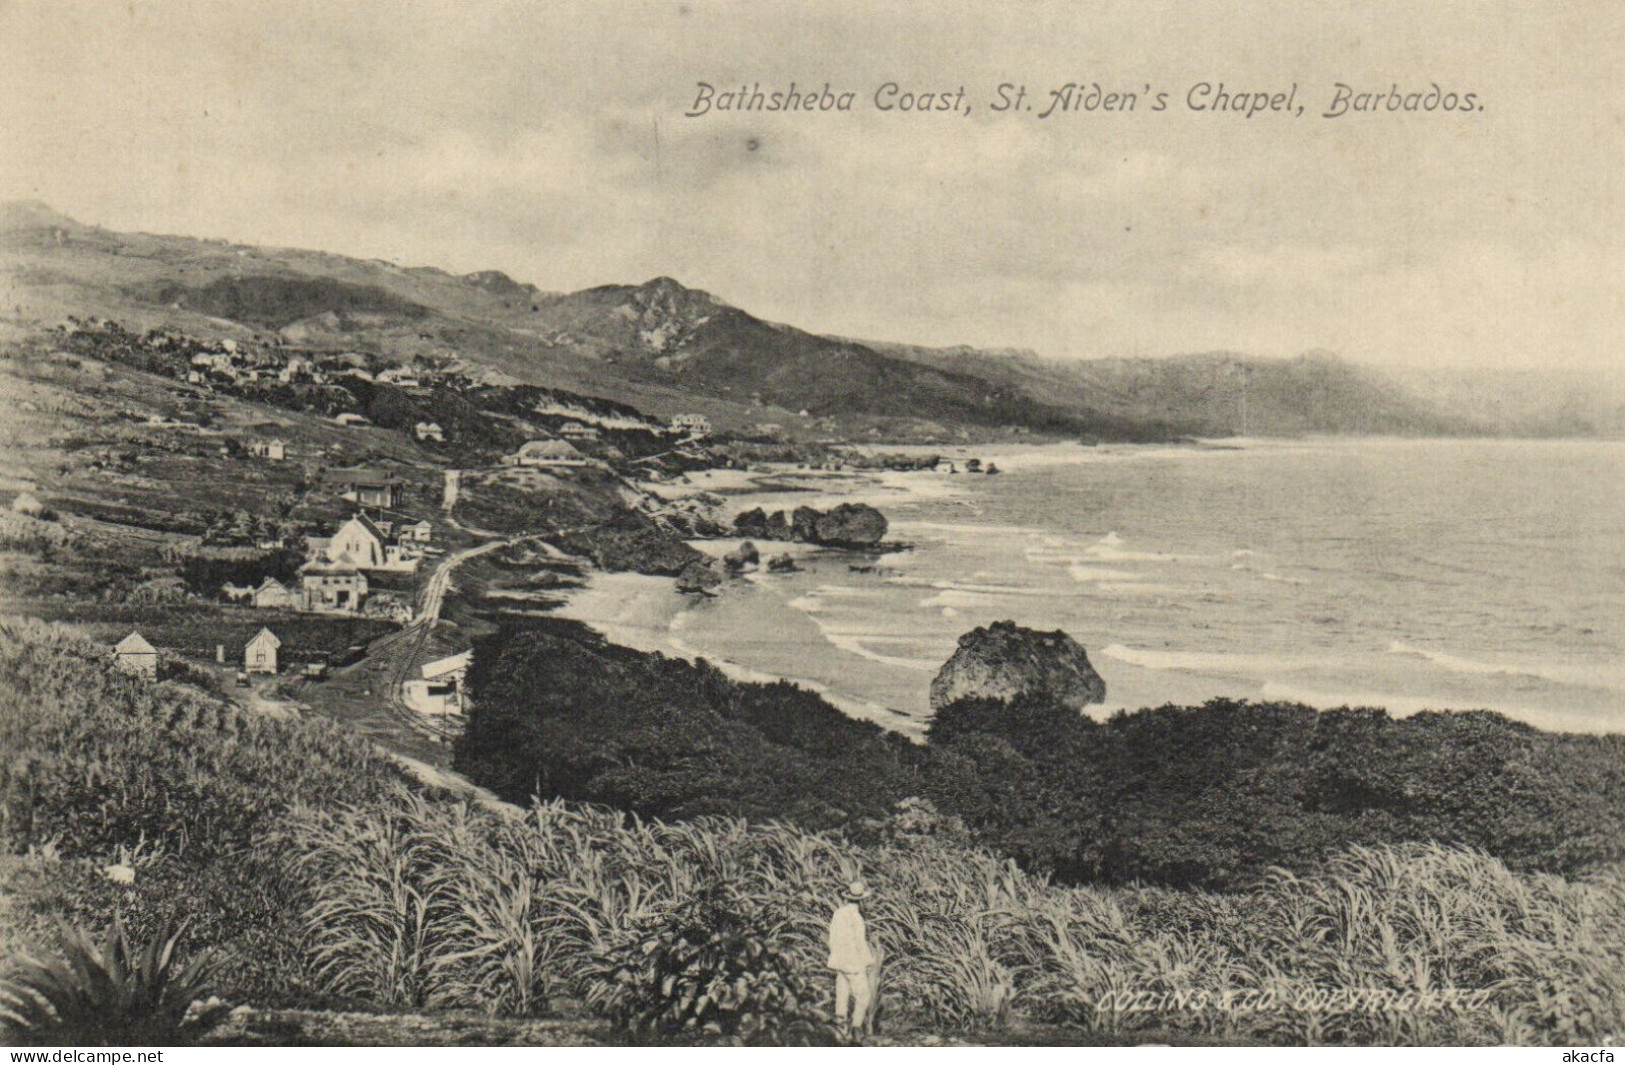 PC BARBADOS, BATHSHEBA COAST, ST. AIDEN'S CHAPEL, Vintage Postcard (b50055) - Barbados